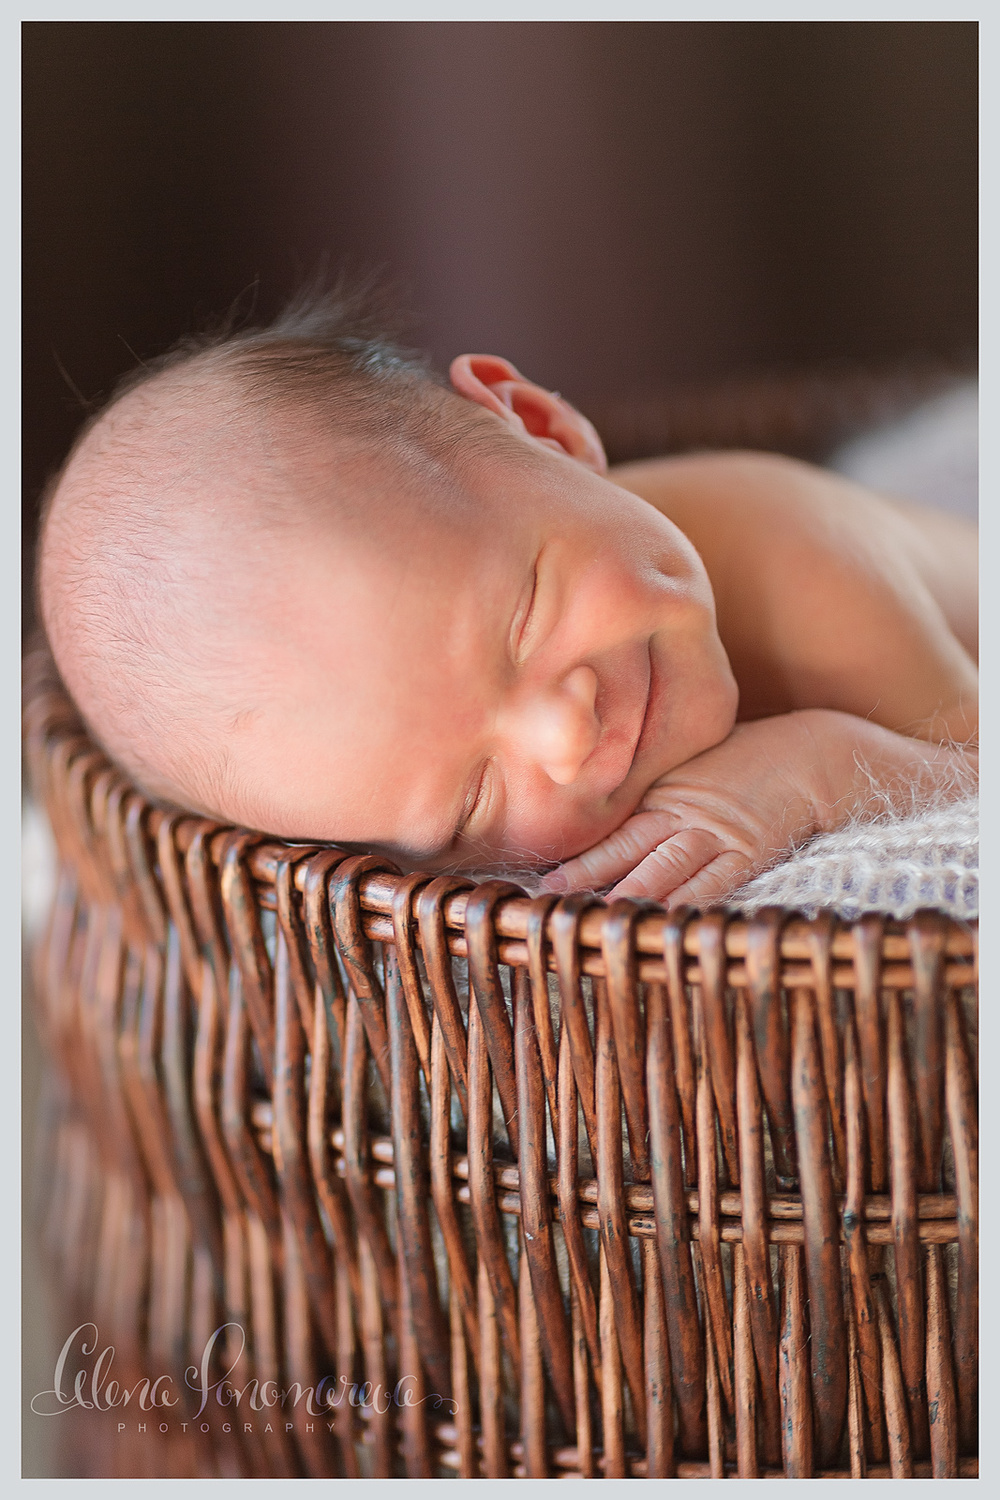 ПОРТФОЛИО - НОВОРОЖДЕННЫЕ - фотограф новорожденных в курске, новорожденные, фотограф новорожденных в курске, новорожденный, роддом, фотограф новорожденных, младенцыменьше месяца, newborn_kursk, первая фотостудия для новорожденных в Курскe, фотостудия для новорожденных Алены Пономаревой, newborn_kursk, профессиональный фотограф новорожденных, первая фотосессия, лучший фотограф новорожденных в Курске, newborn